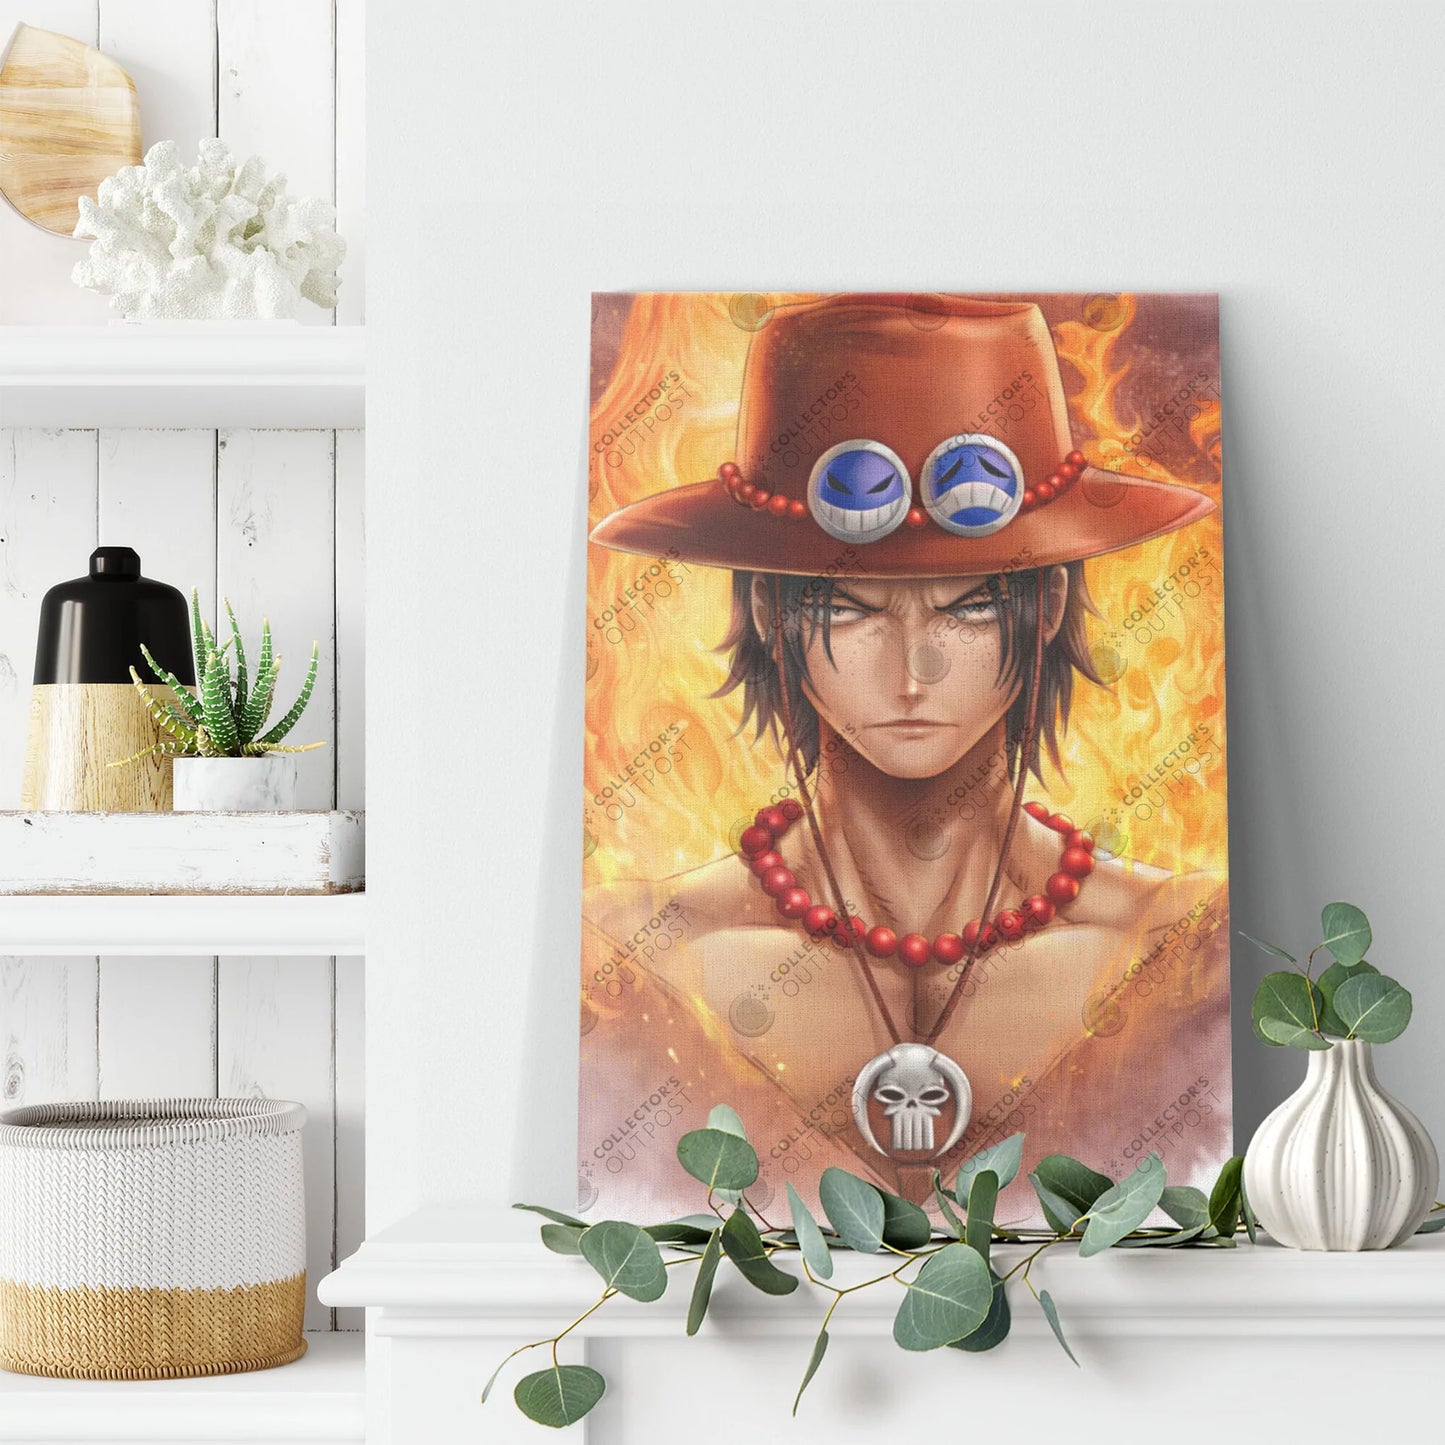 Portgas D. Ace "Fire Pirate" (One Piece) Legacy Portrait Art Print